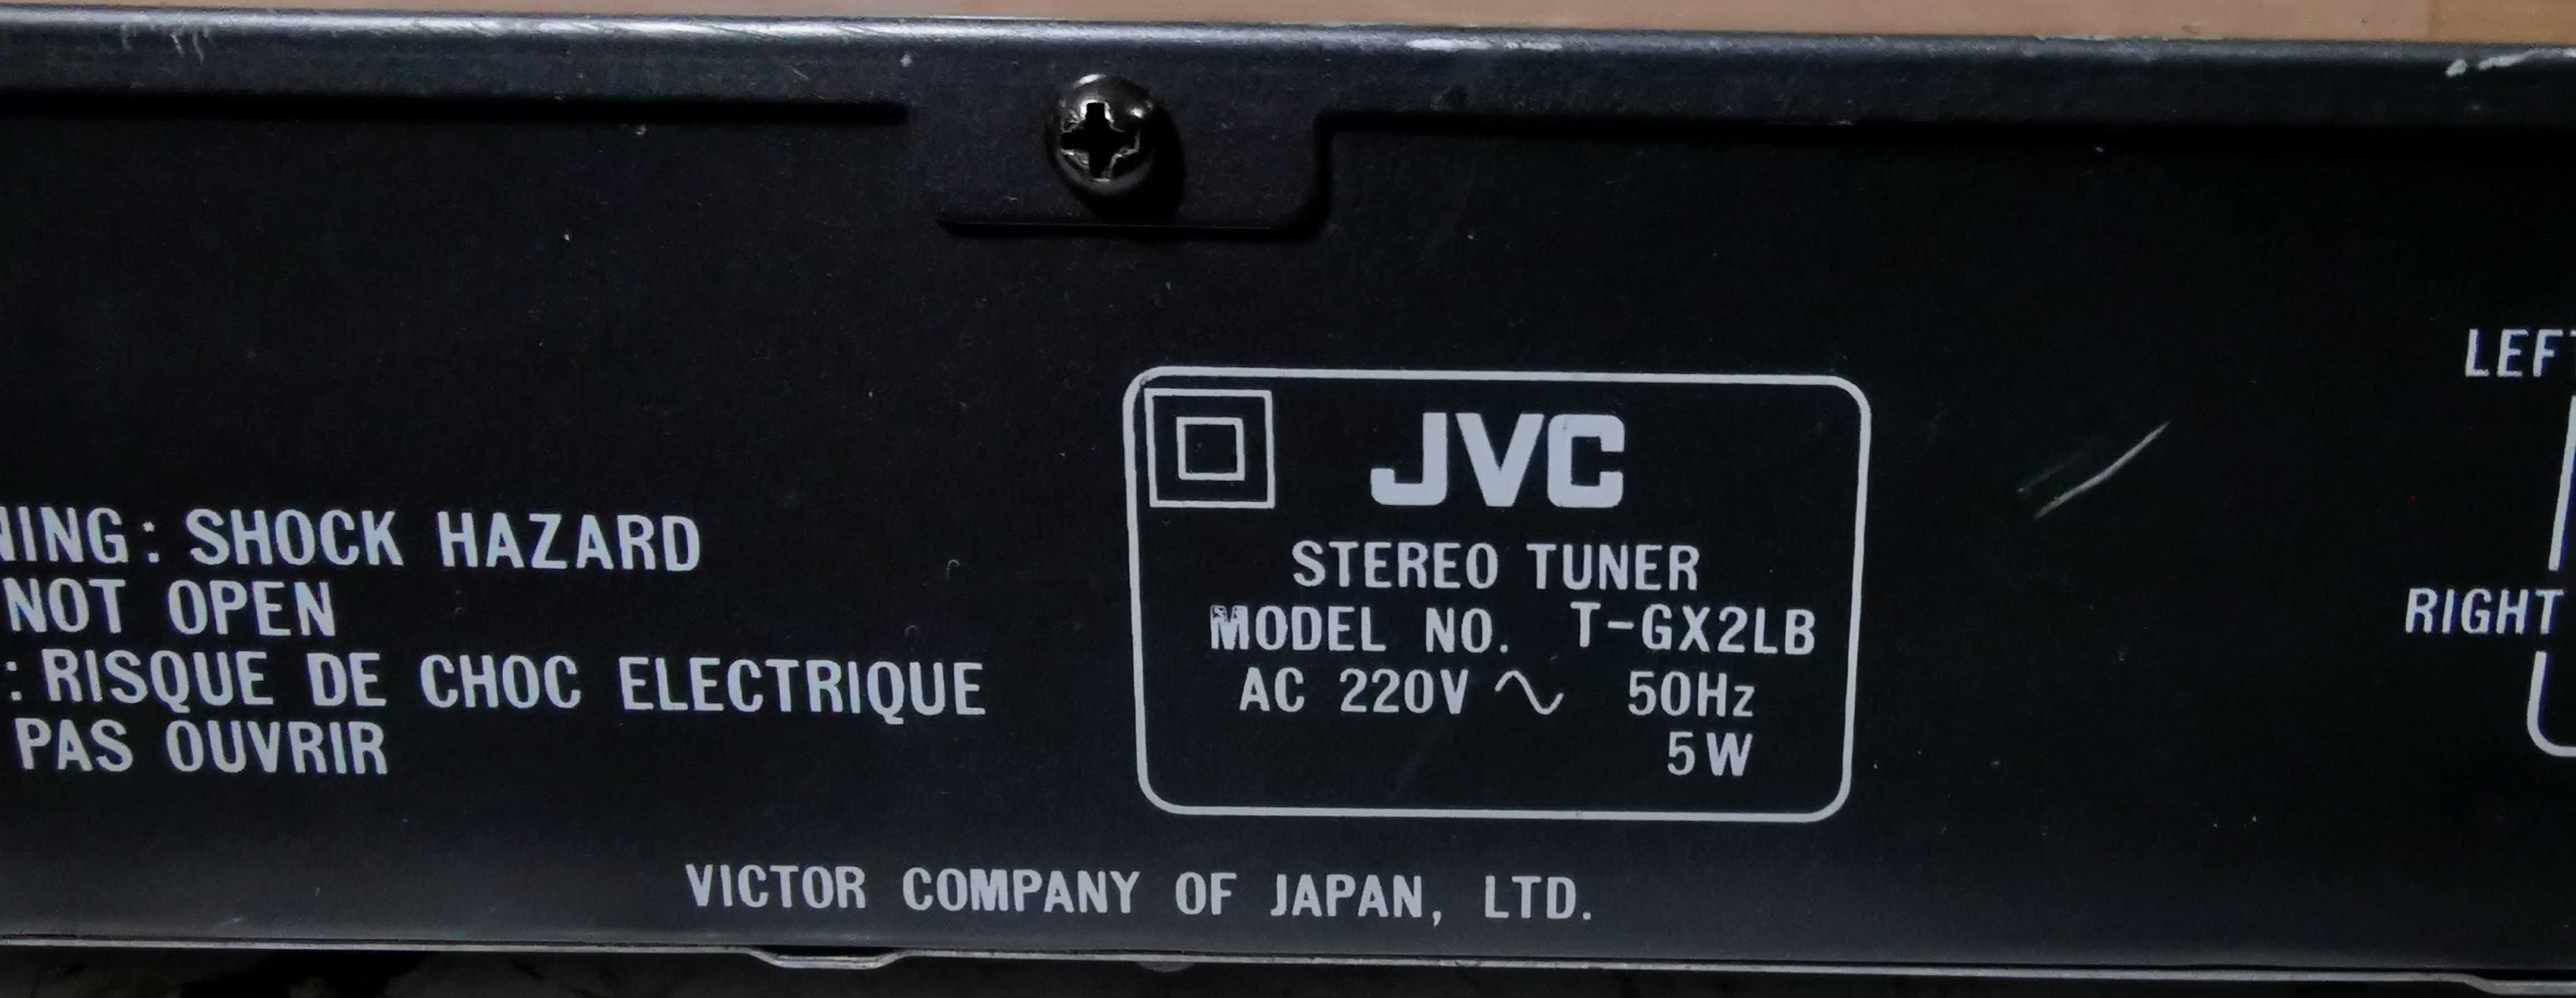 Tuner Jvc-GX2LB Stereo